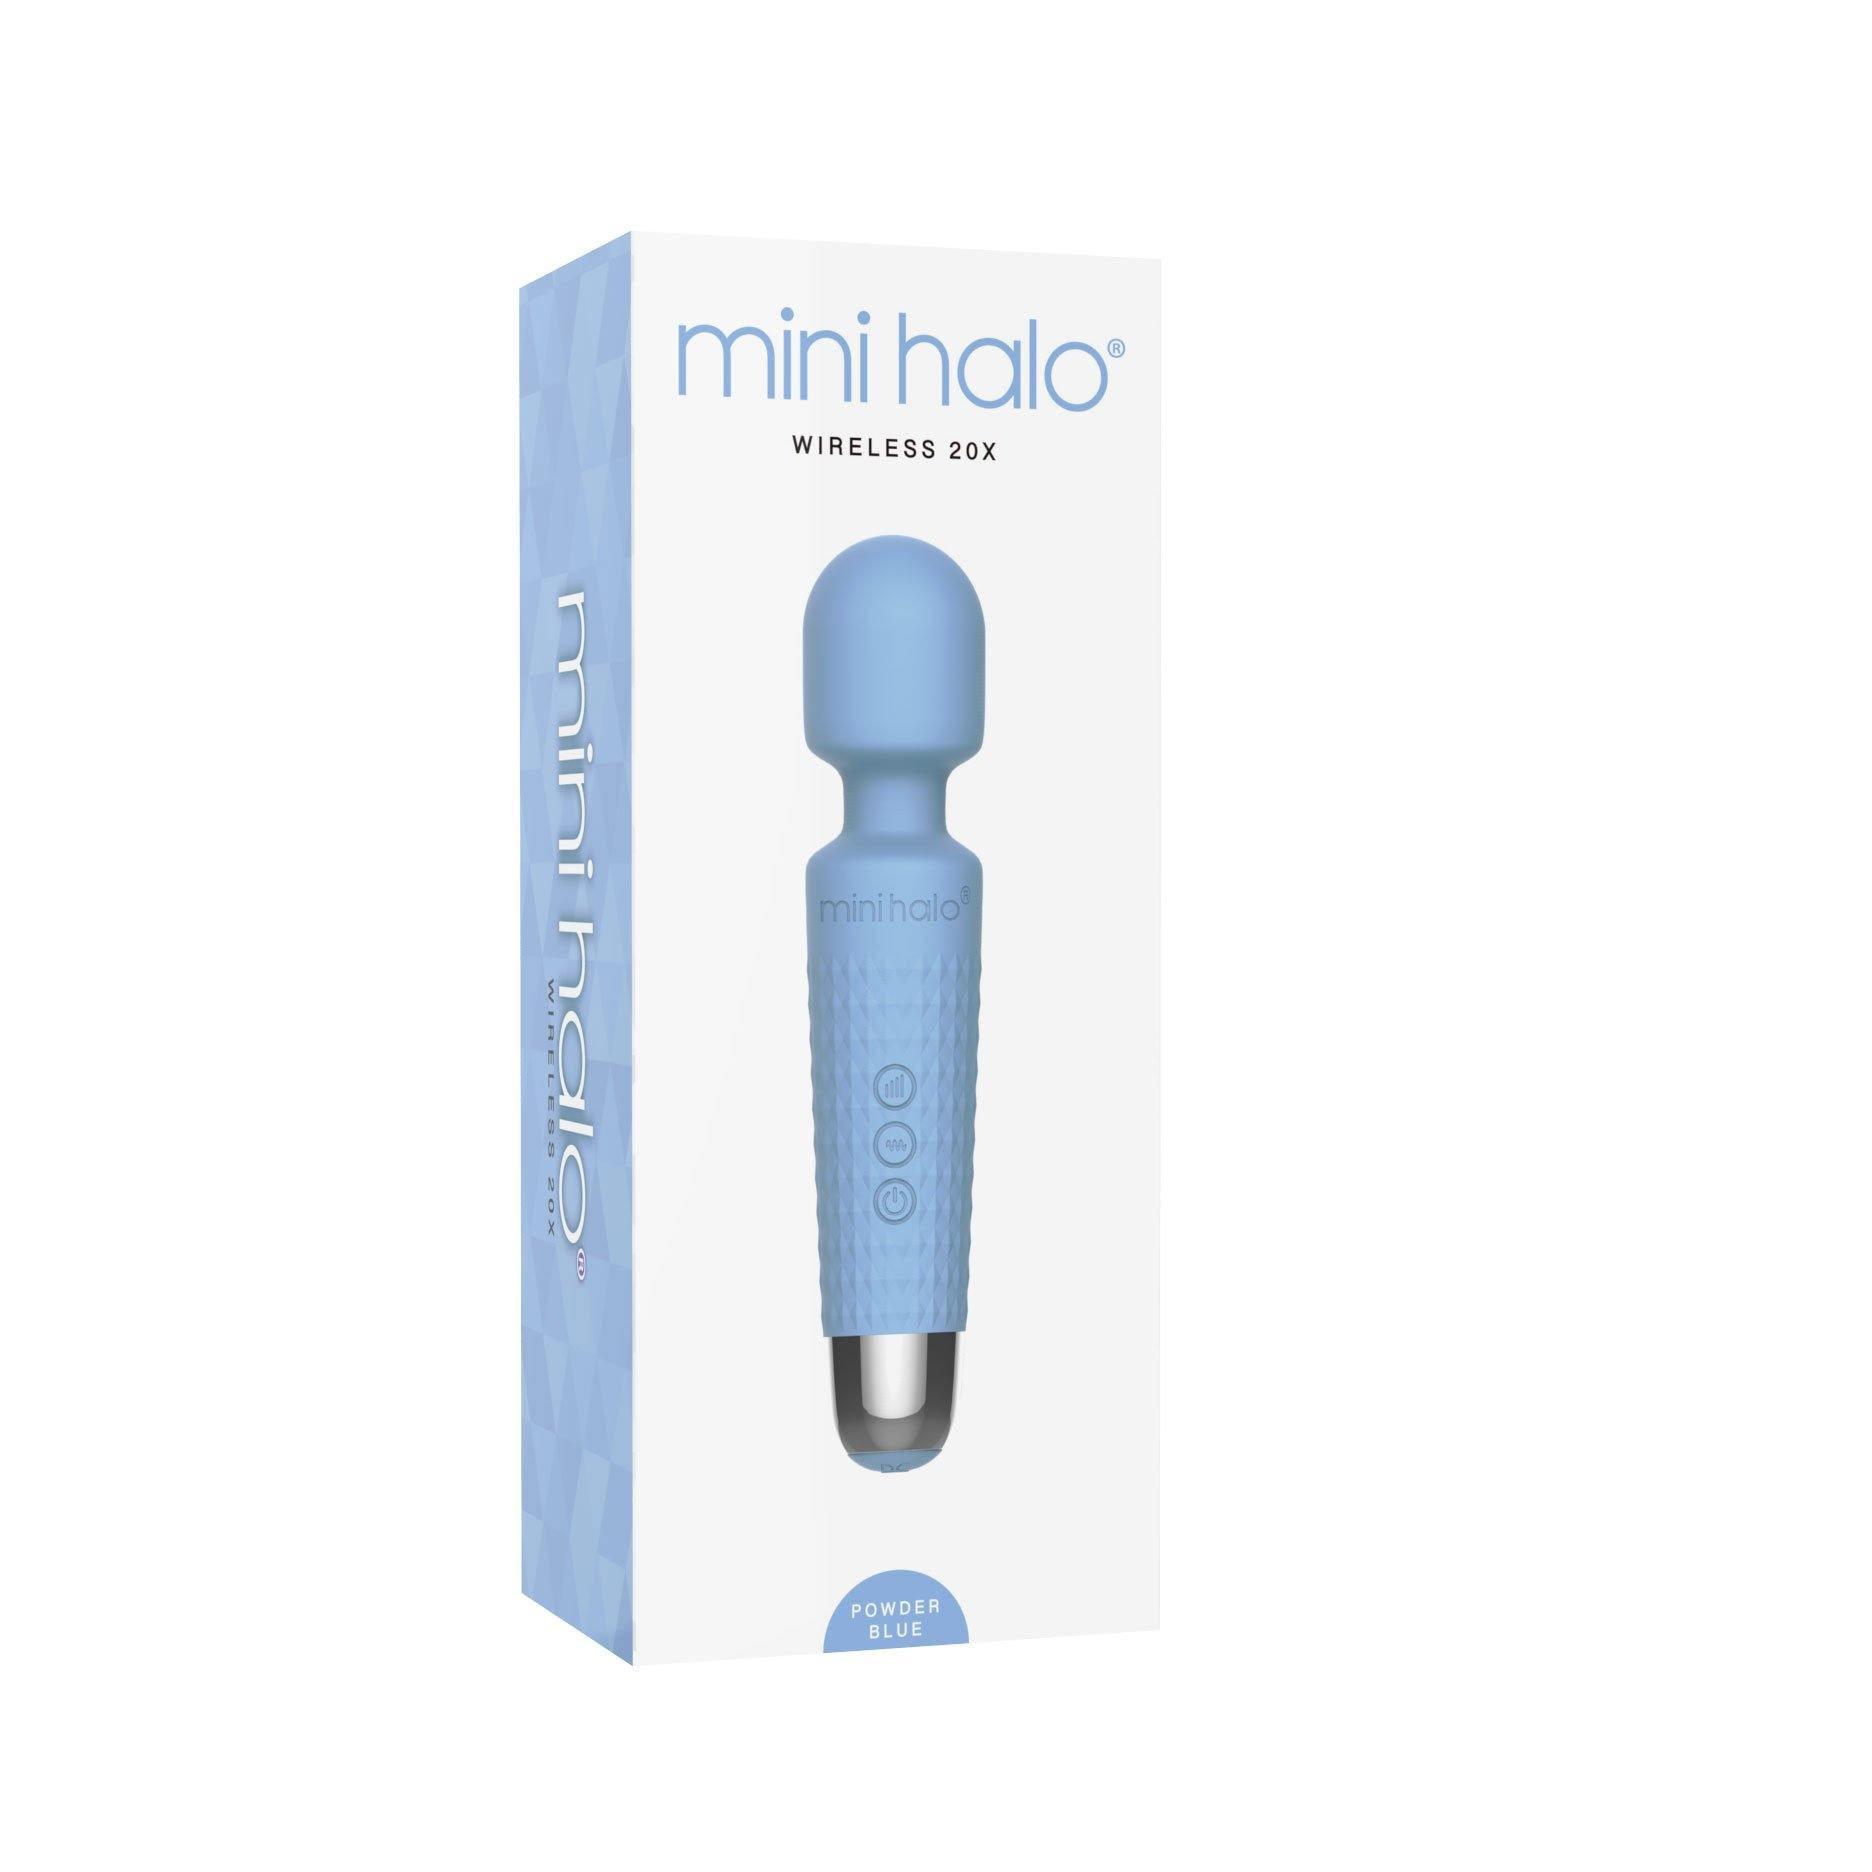 Mini Halo Wireless 20x - Powder Blue - My Sex Toy Hub